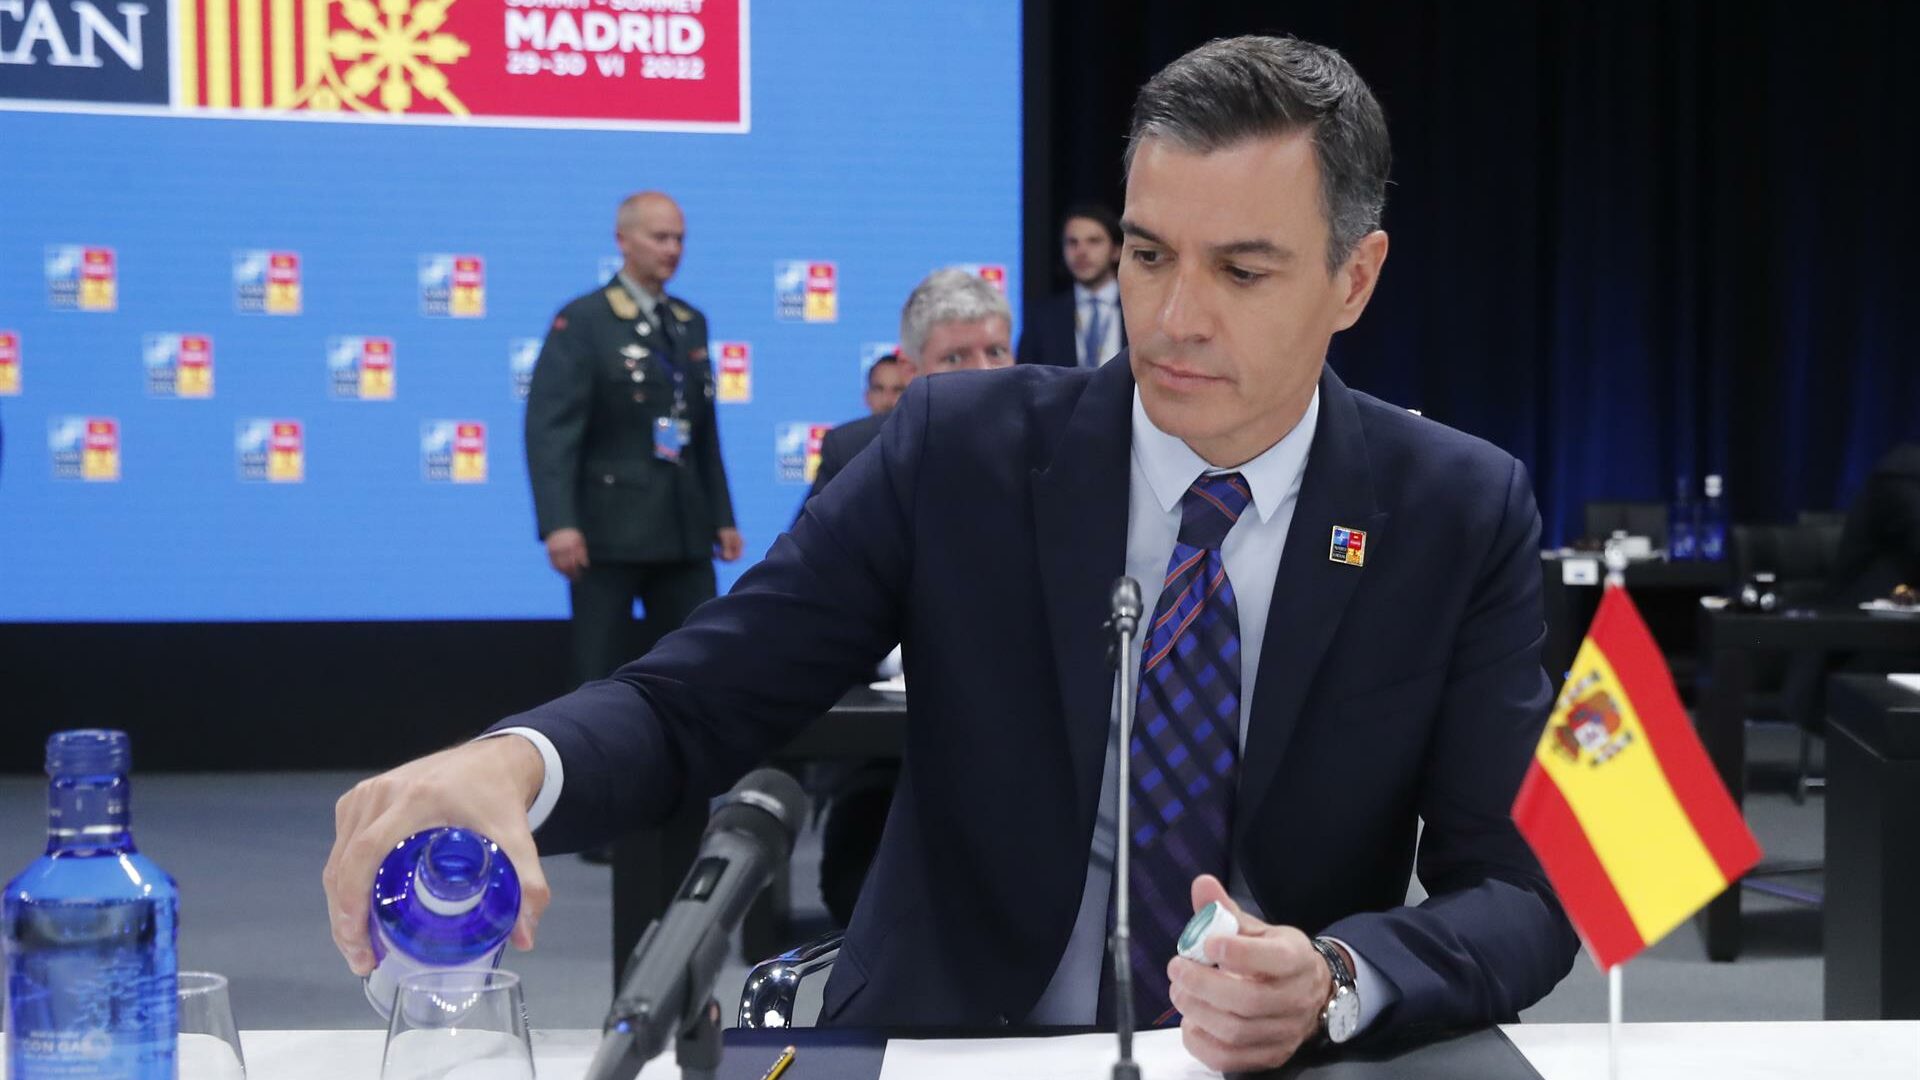 383 asesores y Sánchez vuelve a comparecer ante la OTAN con la bandera de España al revés